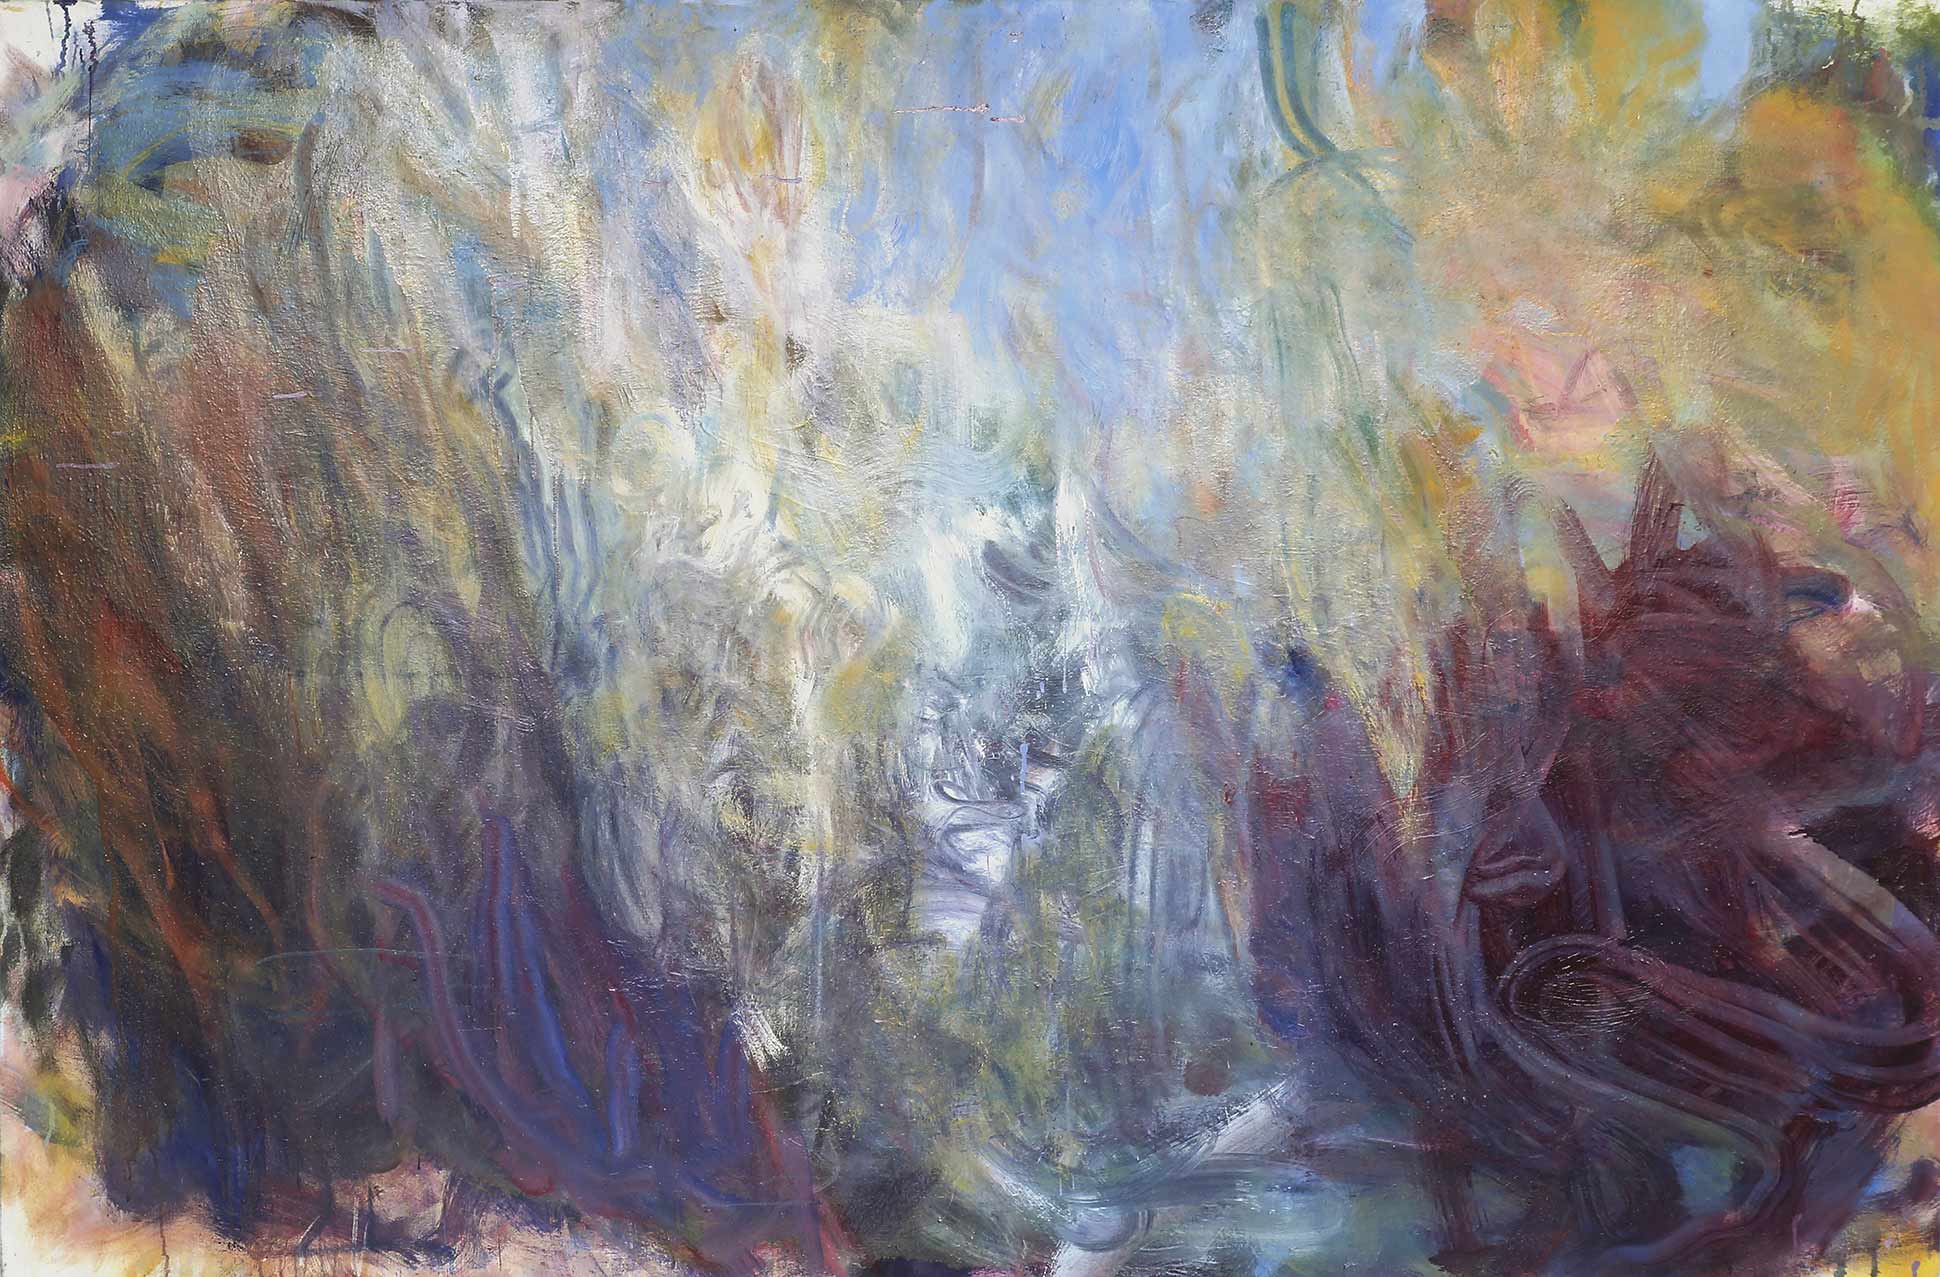 Frank Holliday, Sky Lark, 2013, Oil on canvas, 183 x 123 cm